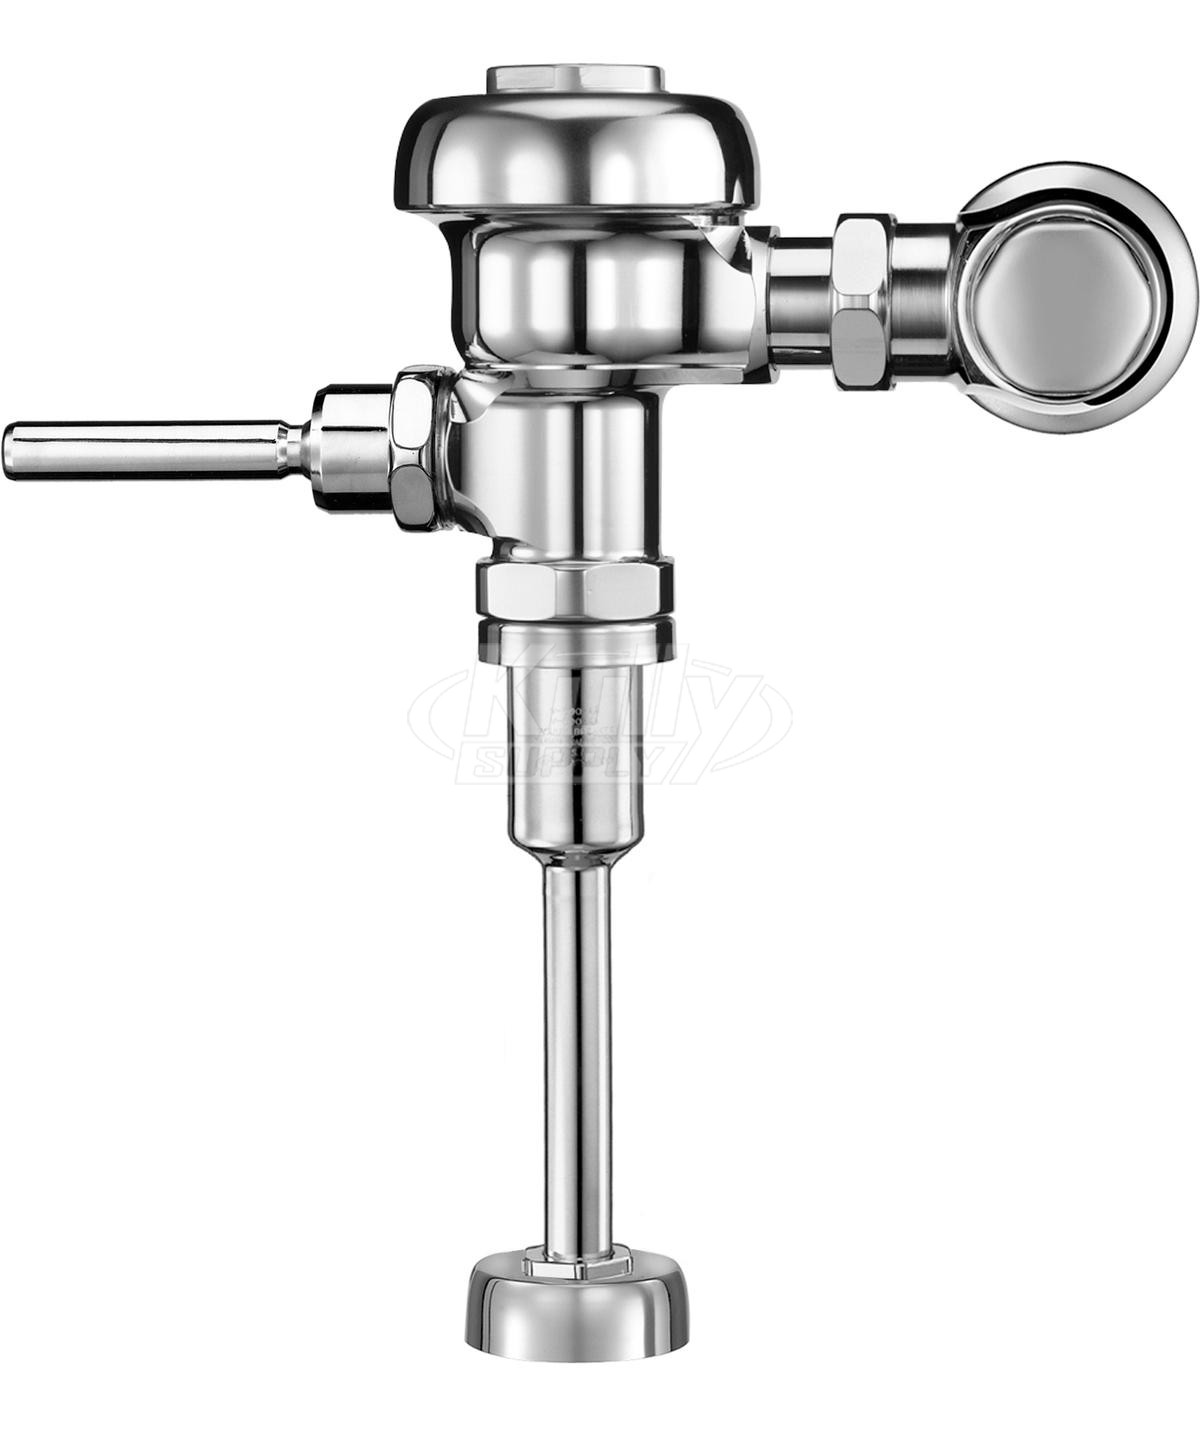 Sloan 180-1 Urinal 1.5 GPF Flushometer